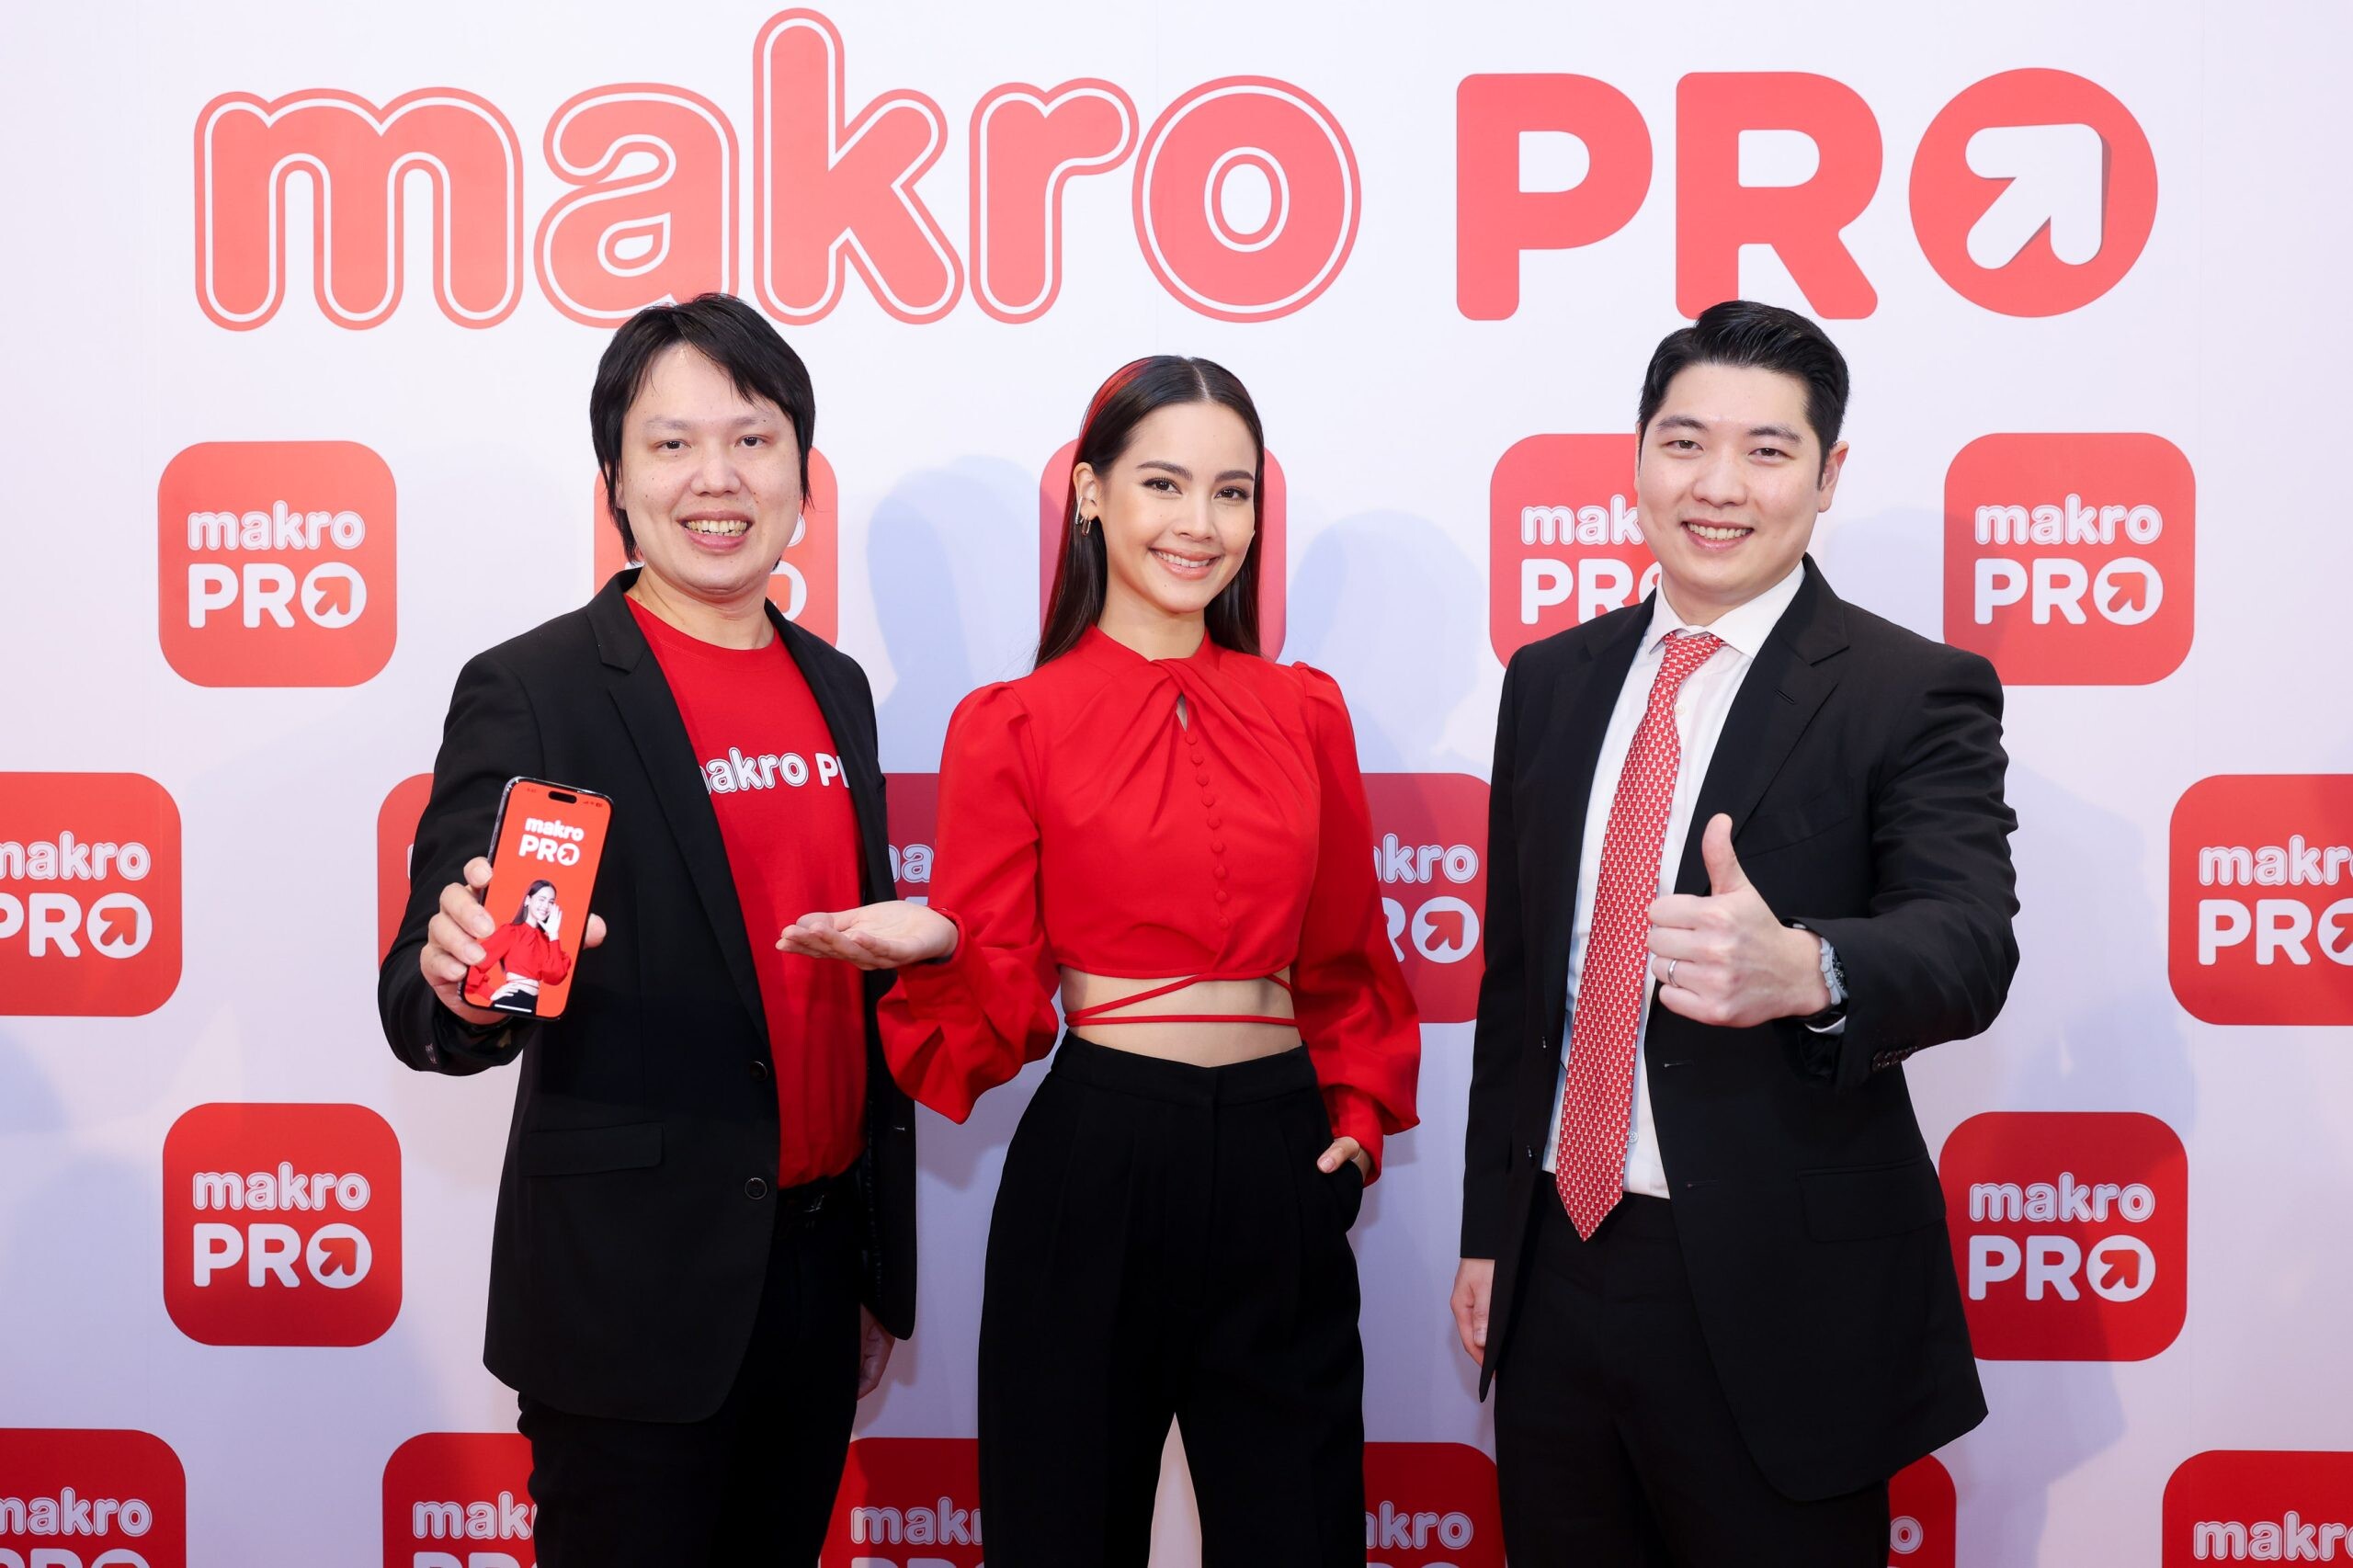 แม็คโคร พลิกโฉมธุรกิจ มุ่งสู่ผู้นำค้าส่งออมนิแชนแนลของไทย เปิดตัวยิ่งใหญ่ "Makro PRO" สั่ง ขาย คุ้ม อย่างโปรในแอปเดียว